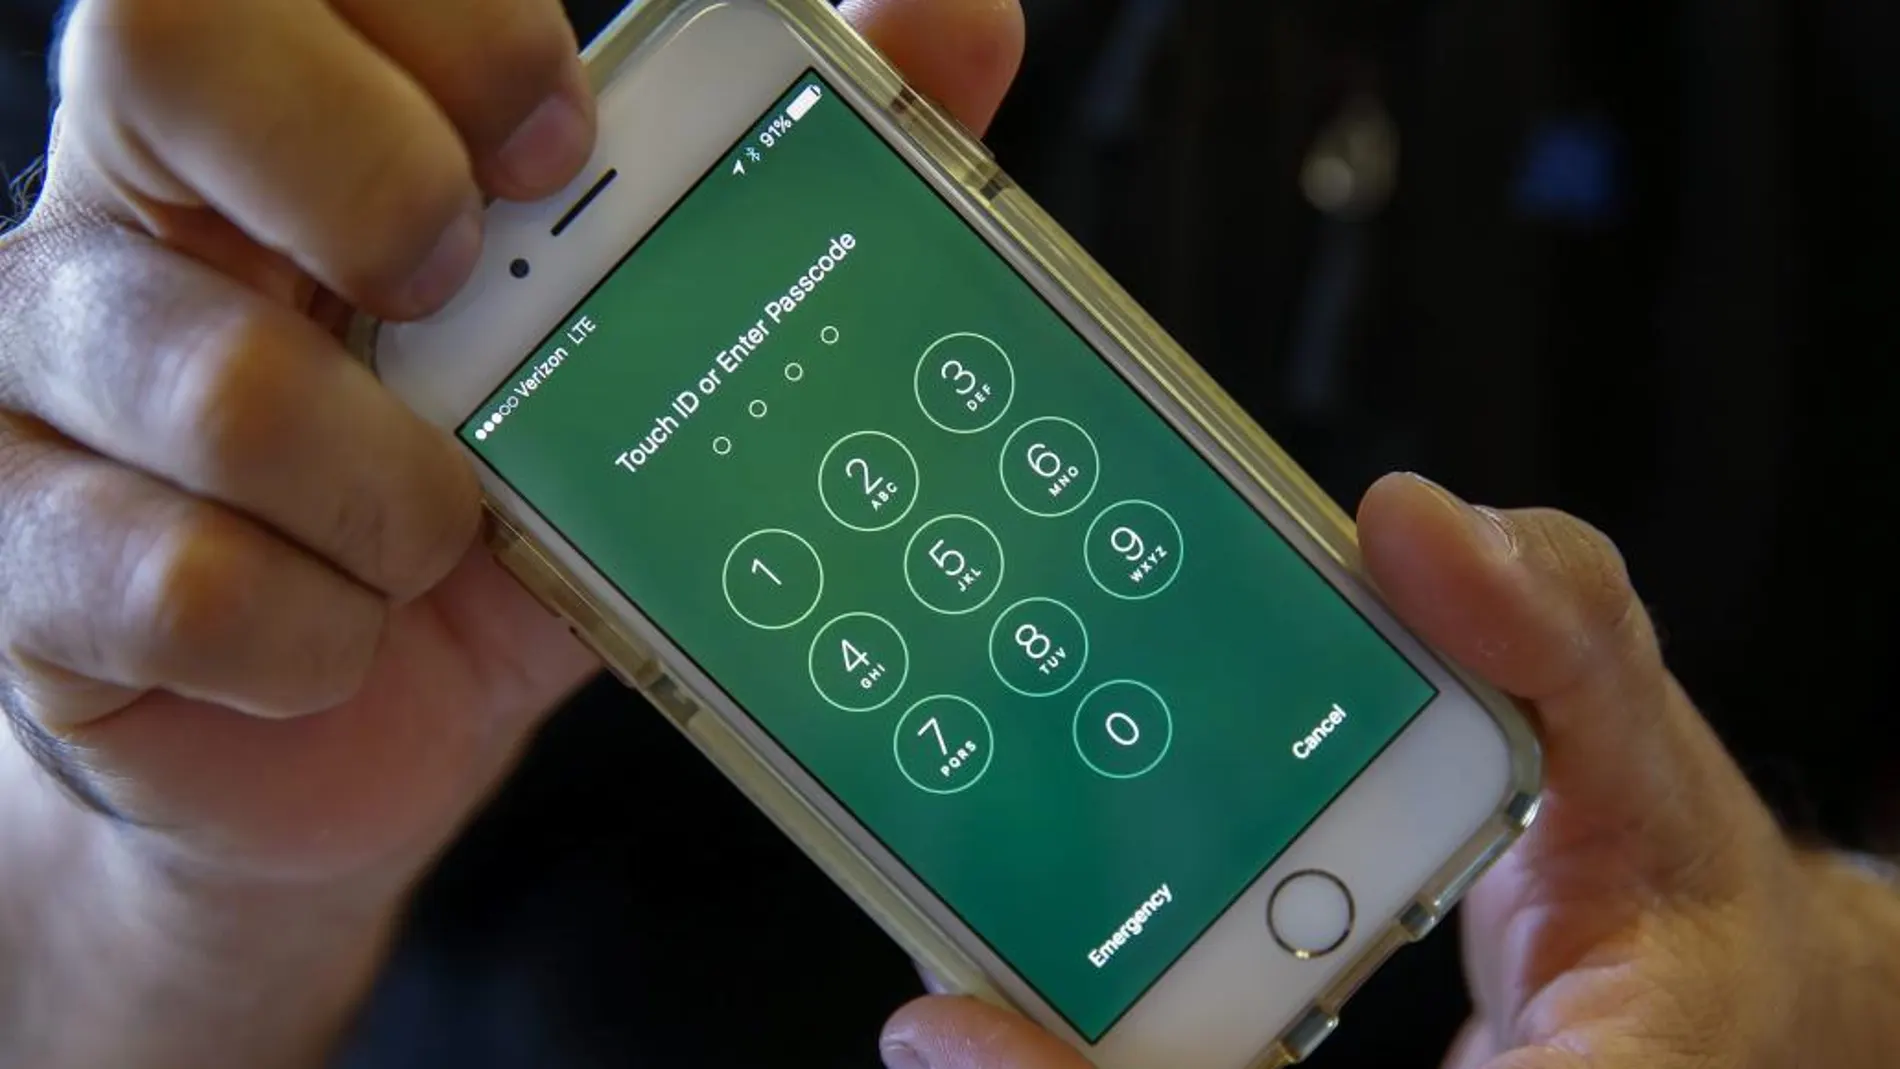 La Policía Nacional alerta: averigua si están hackeando tu móvil